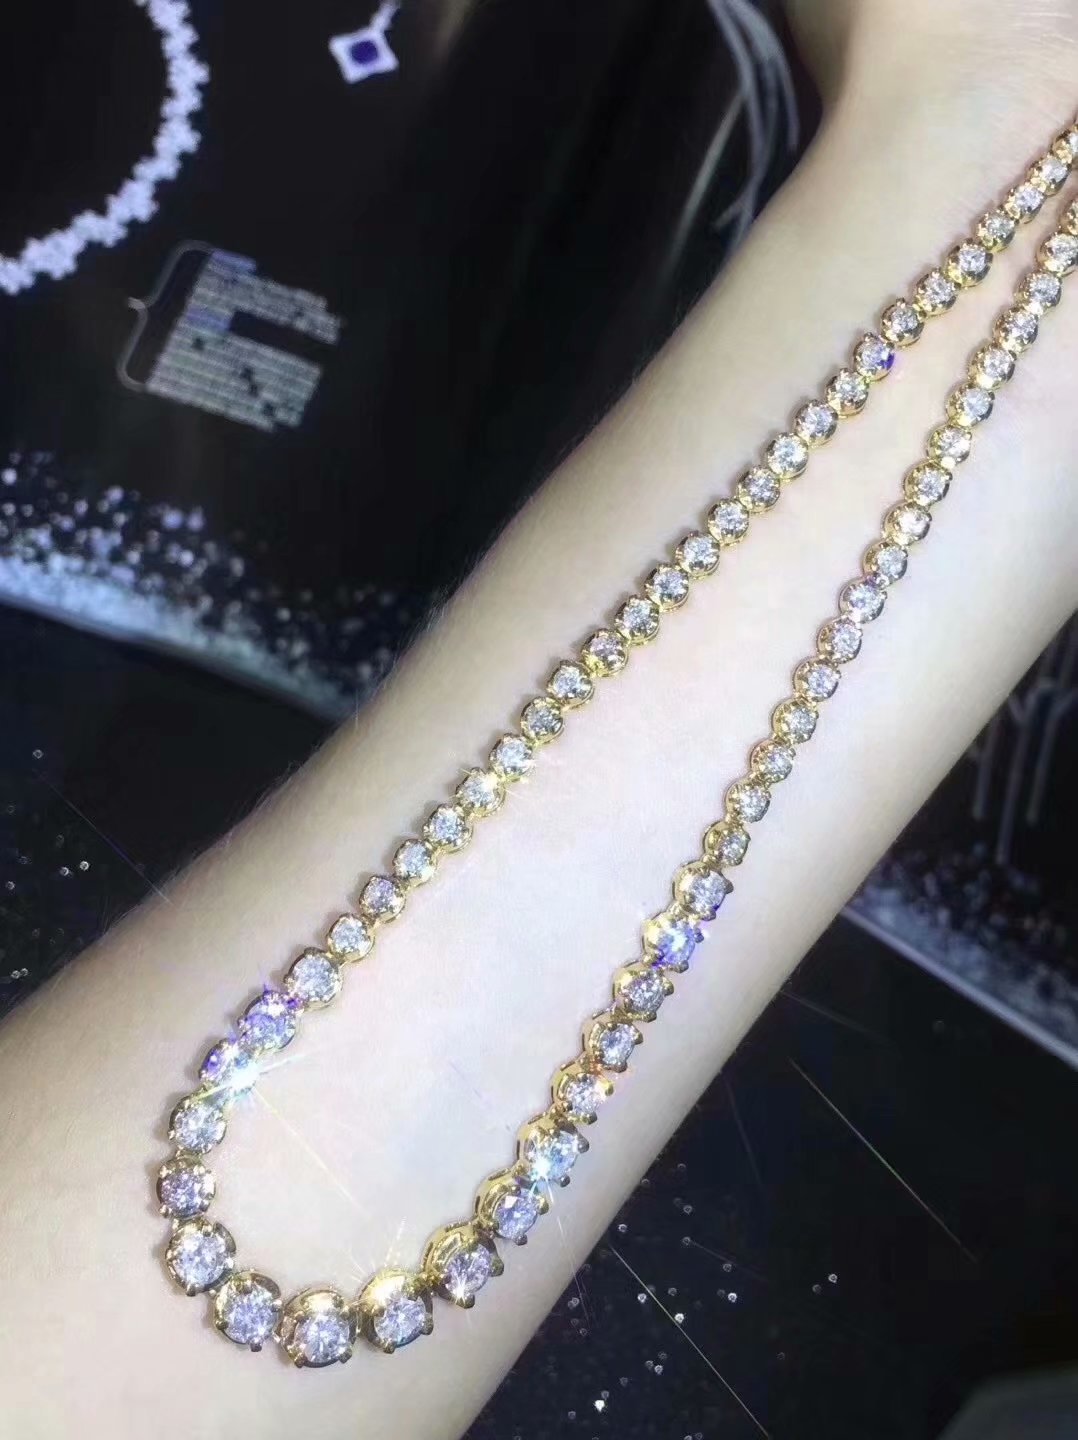 钻石项链 漂亮 用18k金包镶 简约大气 不能忽视的美 实物很好看